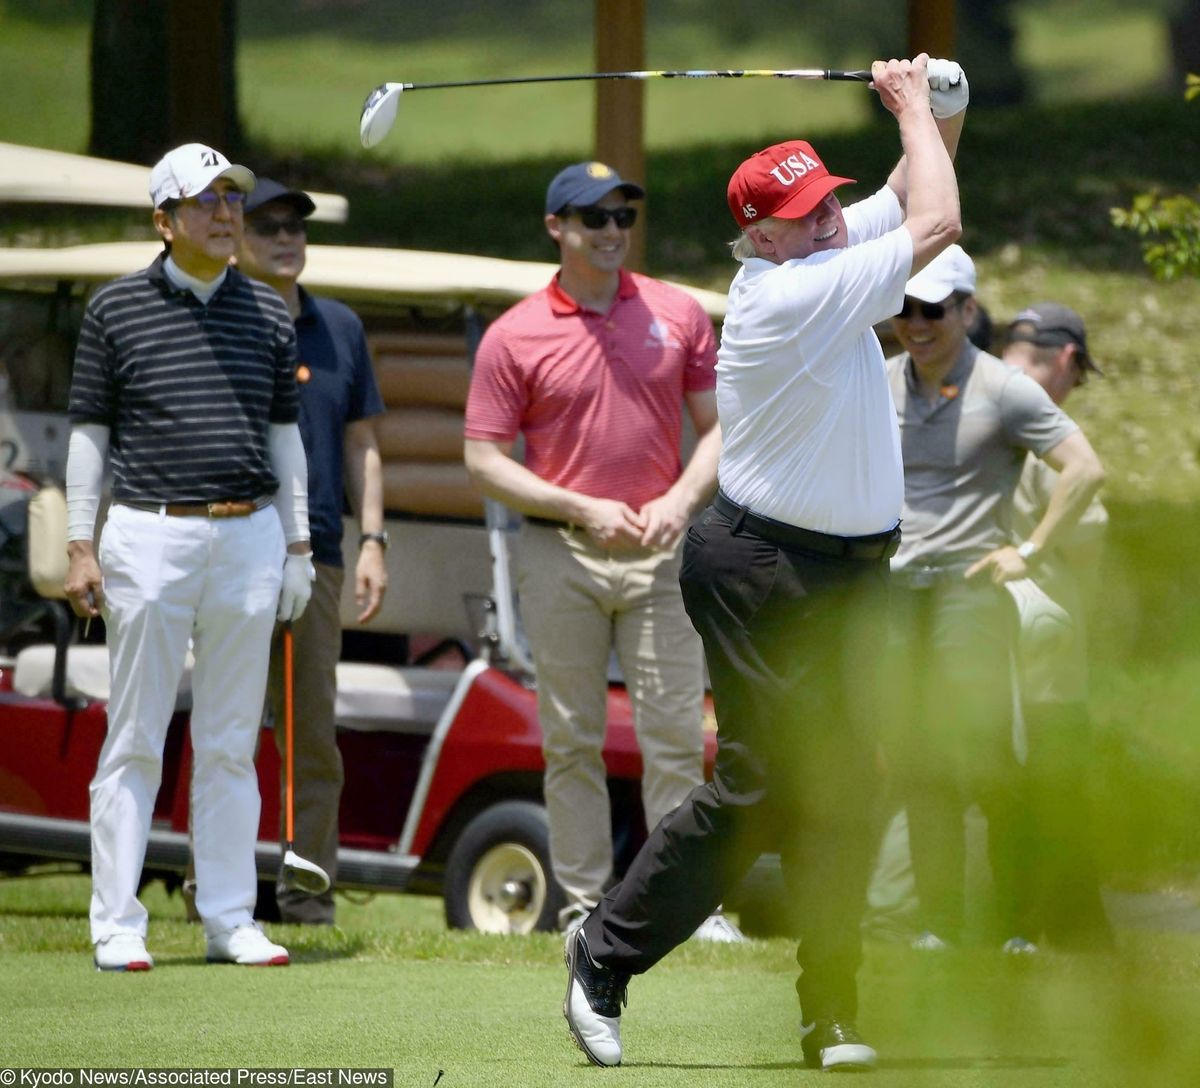 Sikora: “Najlepszy sojusznik PiS wolał pojechać na golfa. Trump skompromitował Dudę” (Opinia)